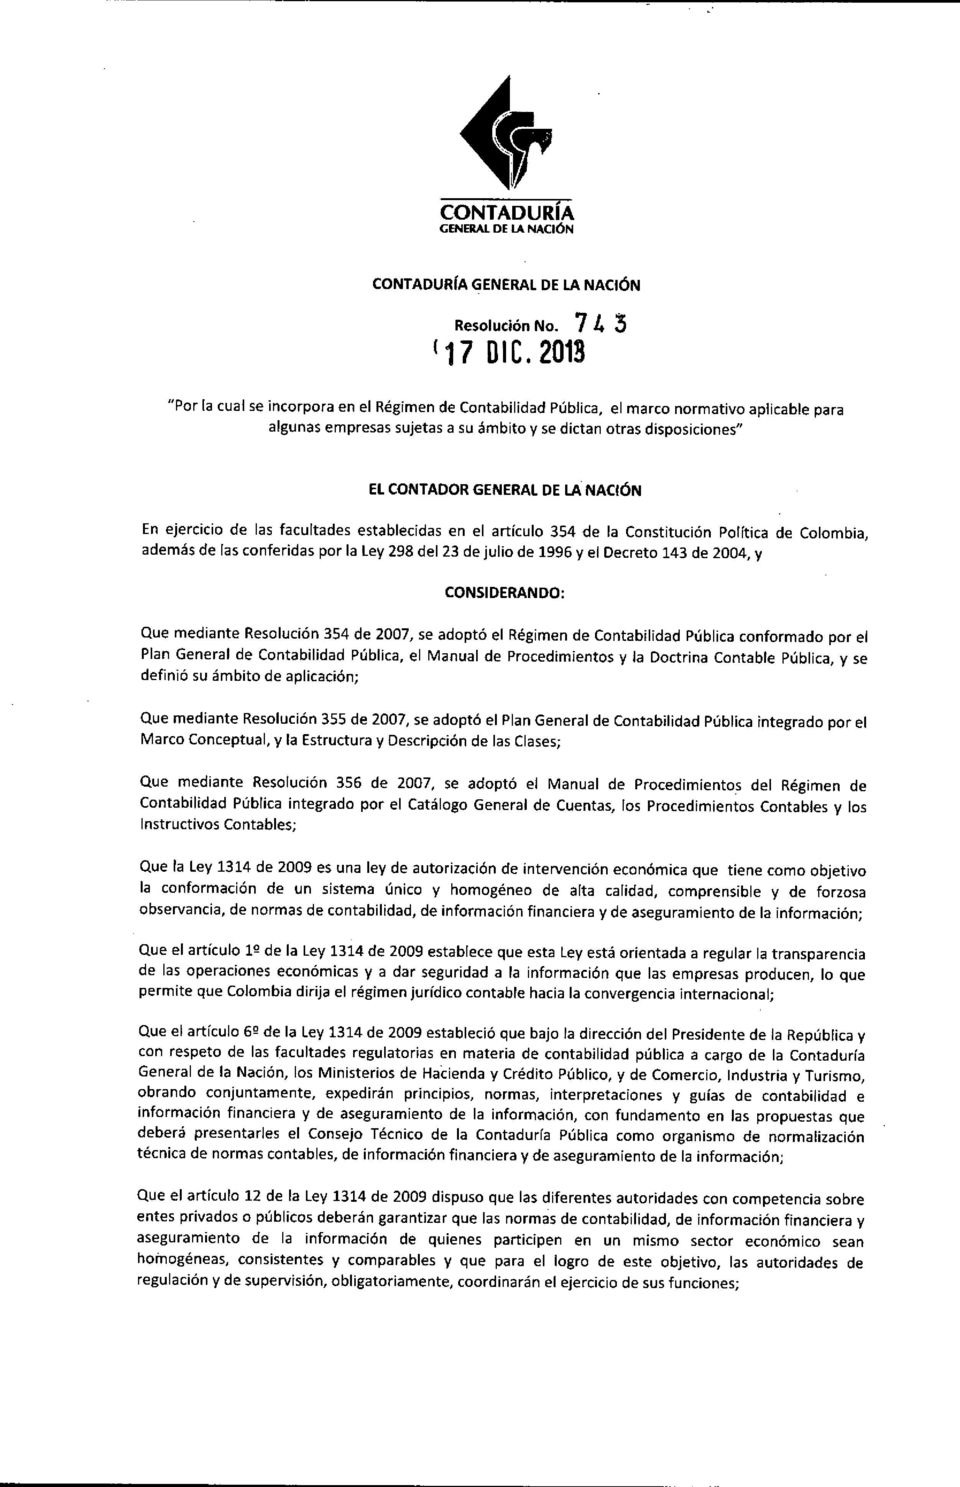 NACiÓN En ejercicio de las facultades establecidas en el artículo 354 de la Constitución Política de Colombia, además de las conferidas por la ley 298 del 23 de julio de 1996 y el Decreto 143 de